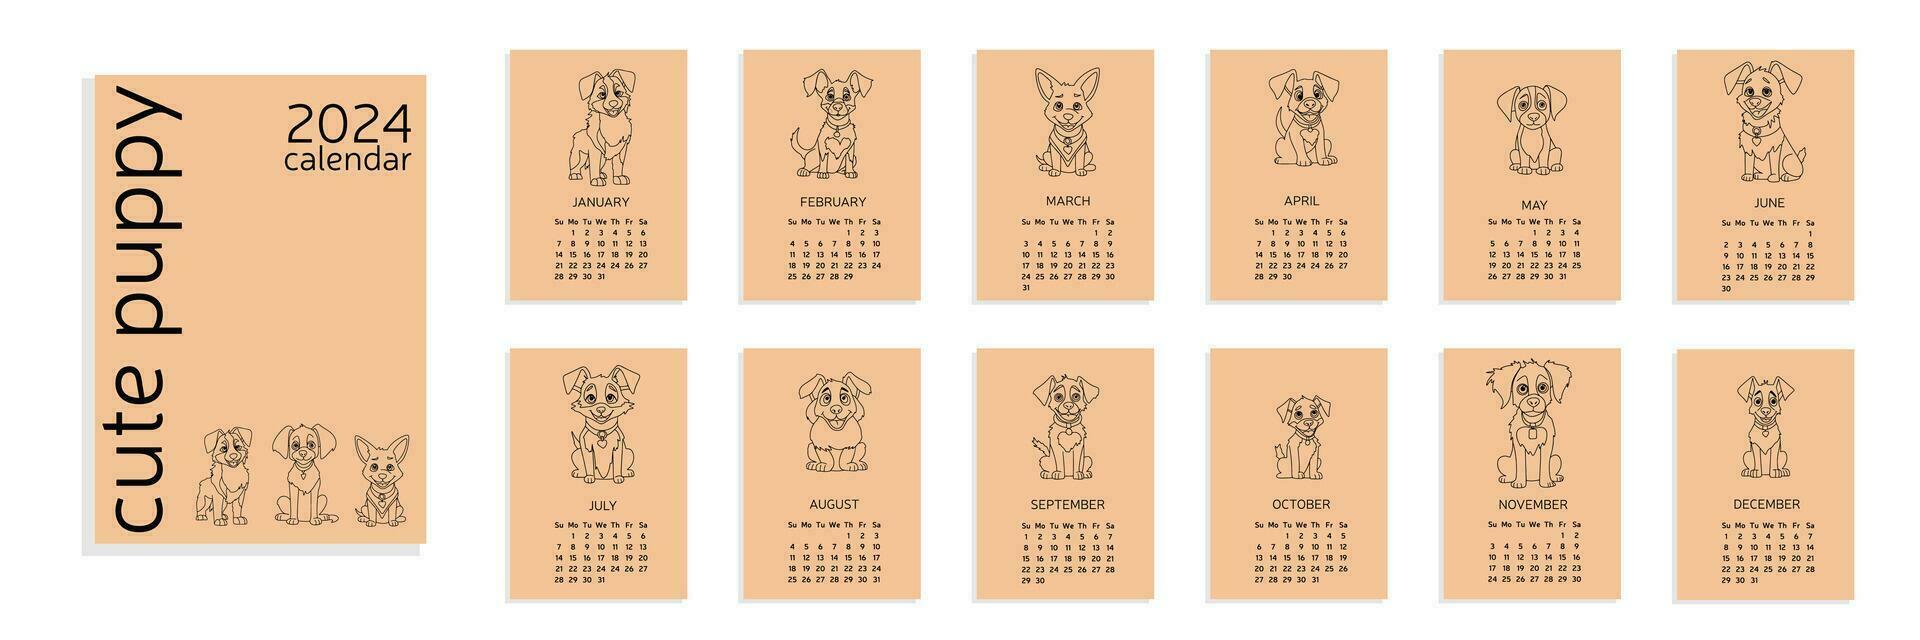 calendario a4 2024 con linda pequeño perro en garabatear estilo, mano dibujar mascotas. calendario 2024 con cachorro. semana comienzo en domingo. vector ilustración